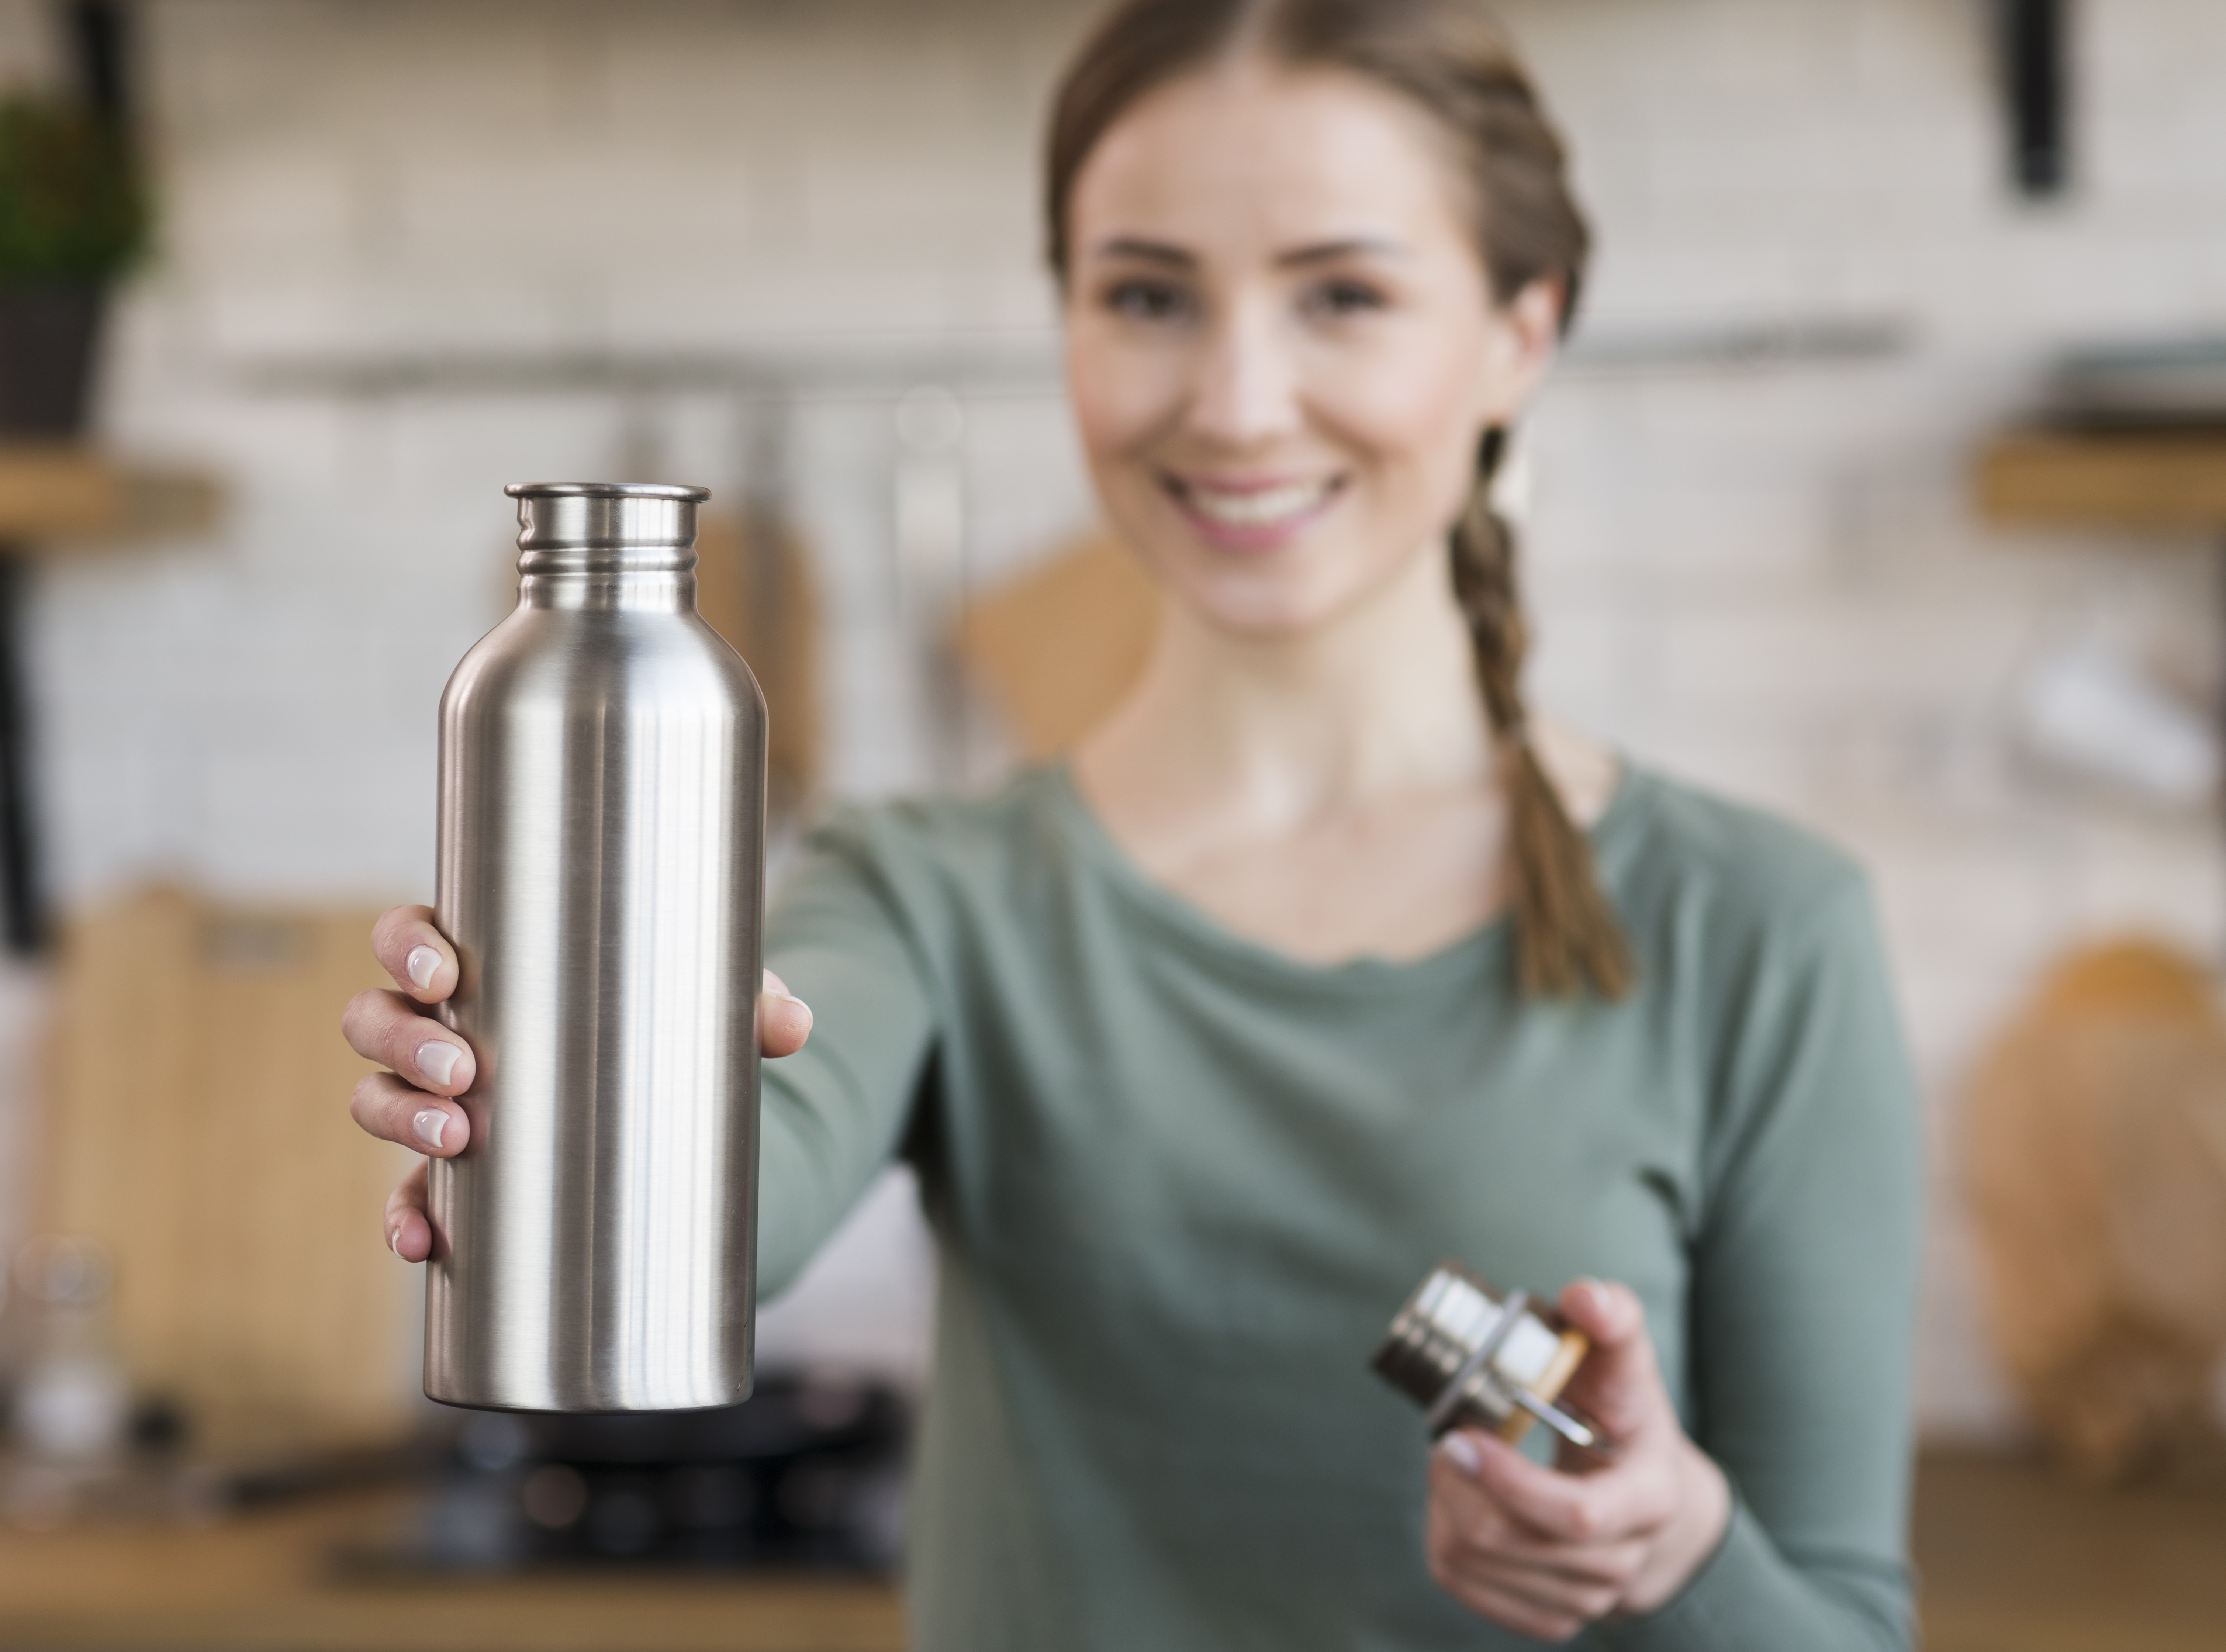 Cukup dengan Air Panas! 3 Tips Jitu Mengatasi Bau Kaos Kaki pada Botol Minum Stainless yang Efektif dan Aman